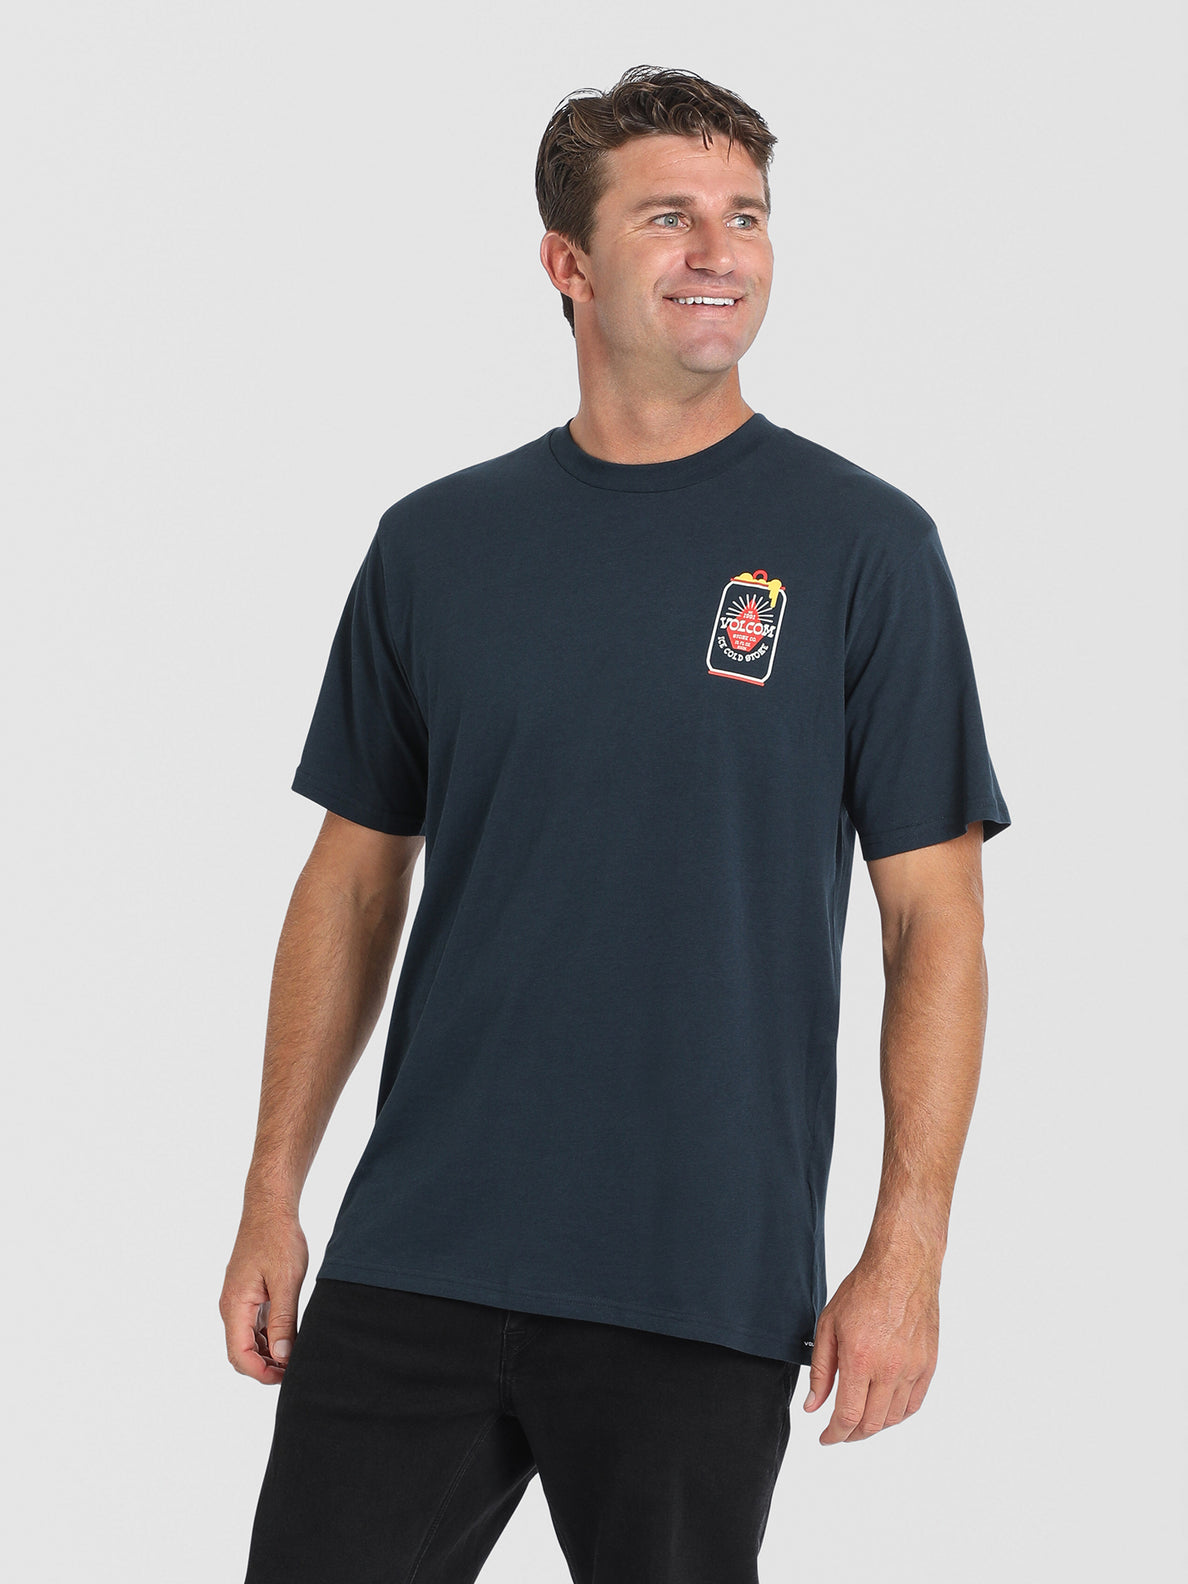 Frostynation Short Sleeve T-Shirt - Navy